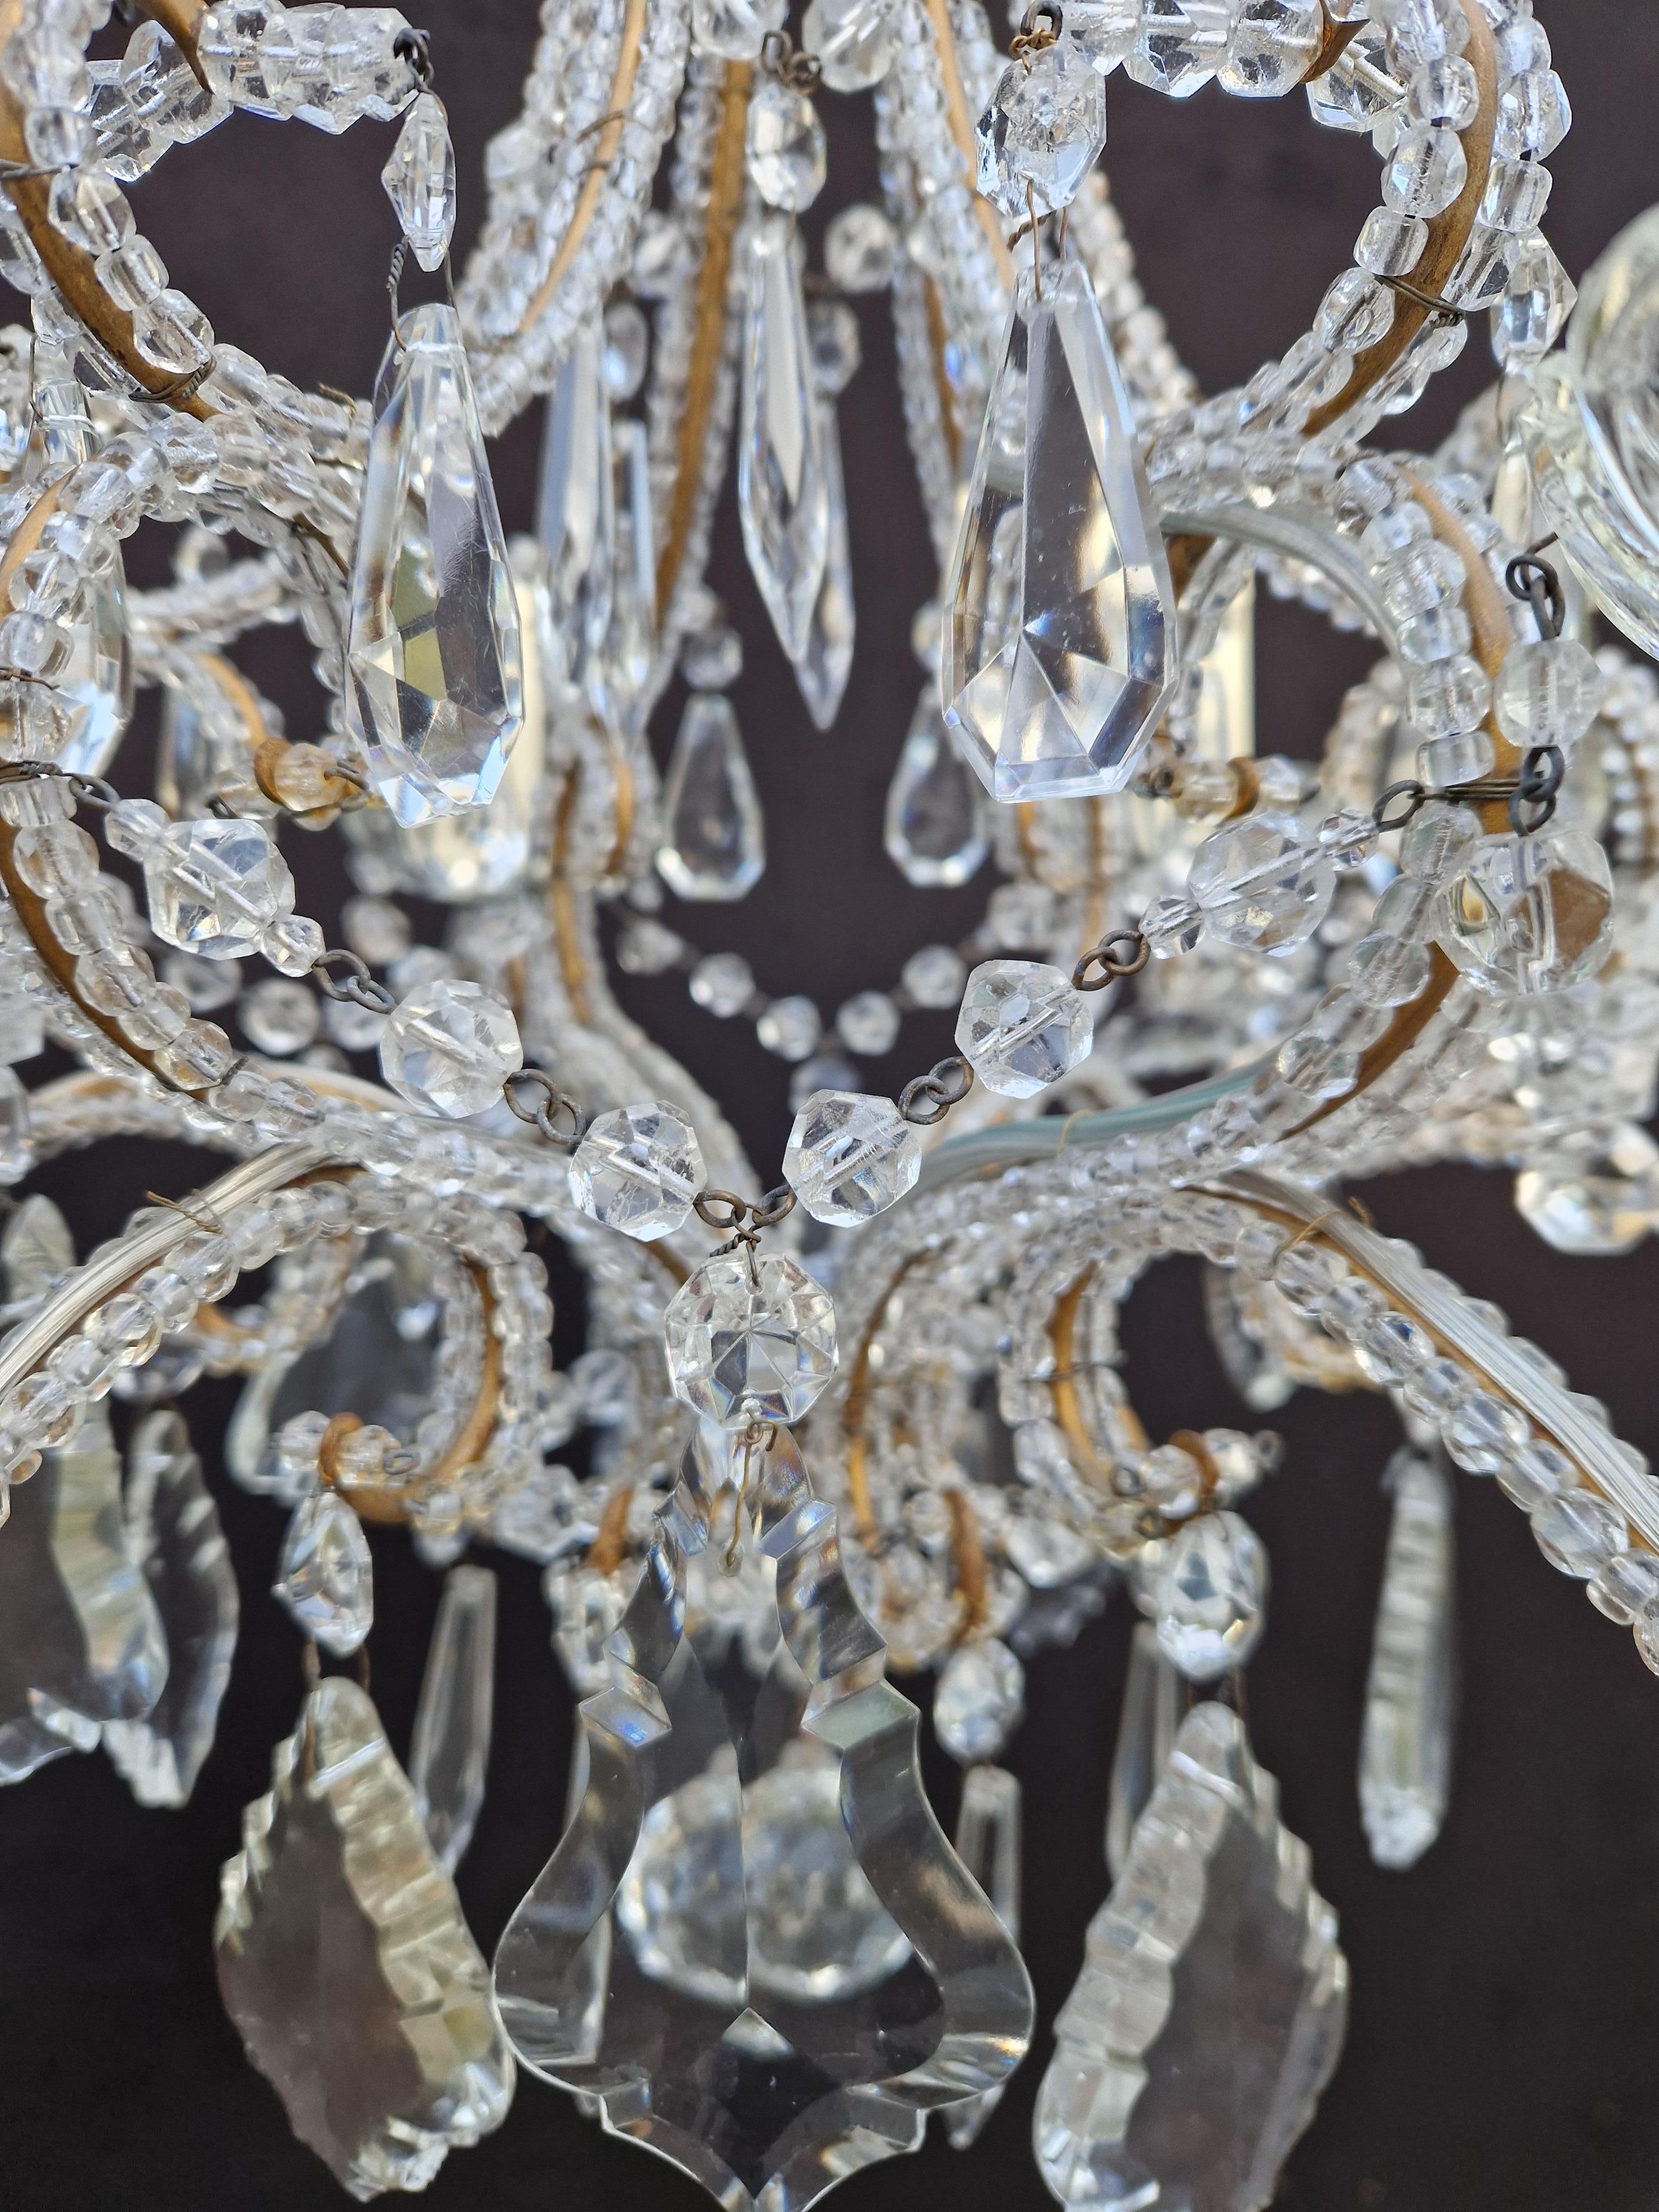 19th Century Candelabrum Crystal Antique Chandelier Ceiling Lustre Art Nouveau